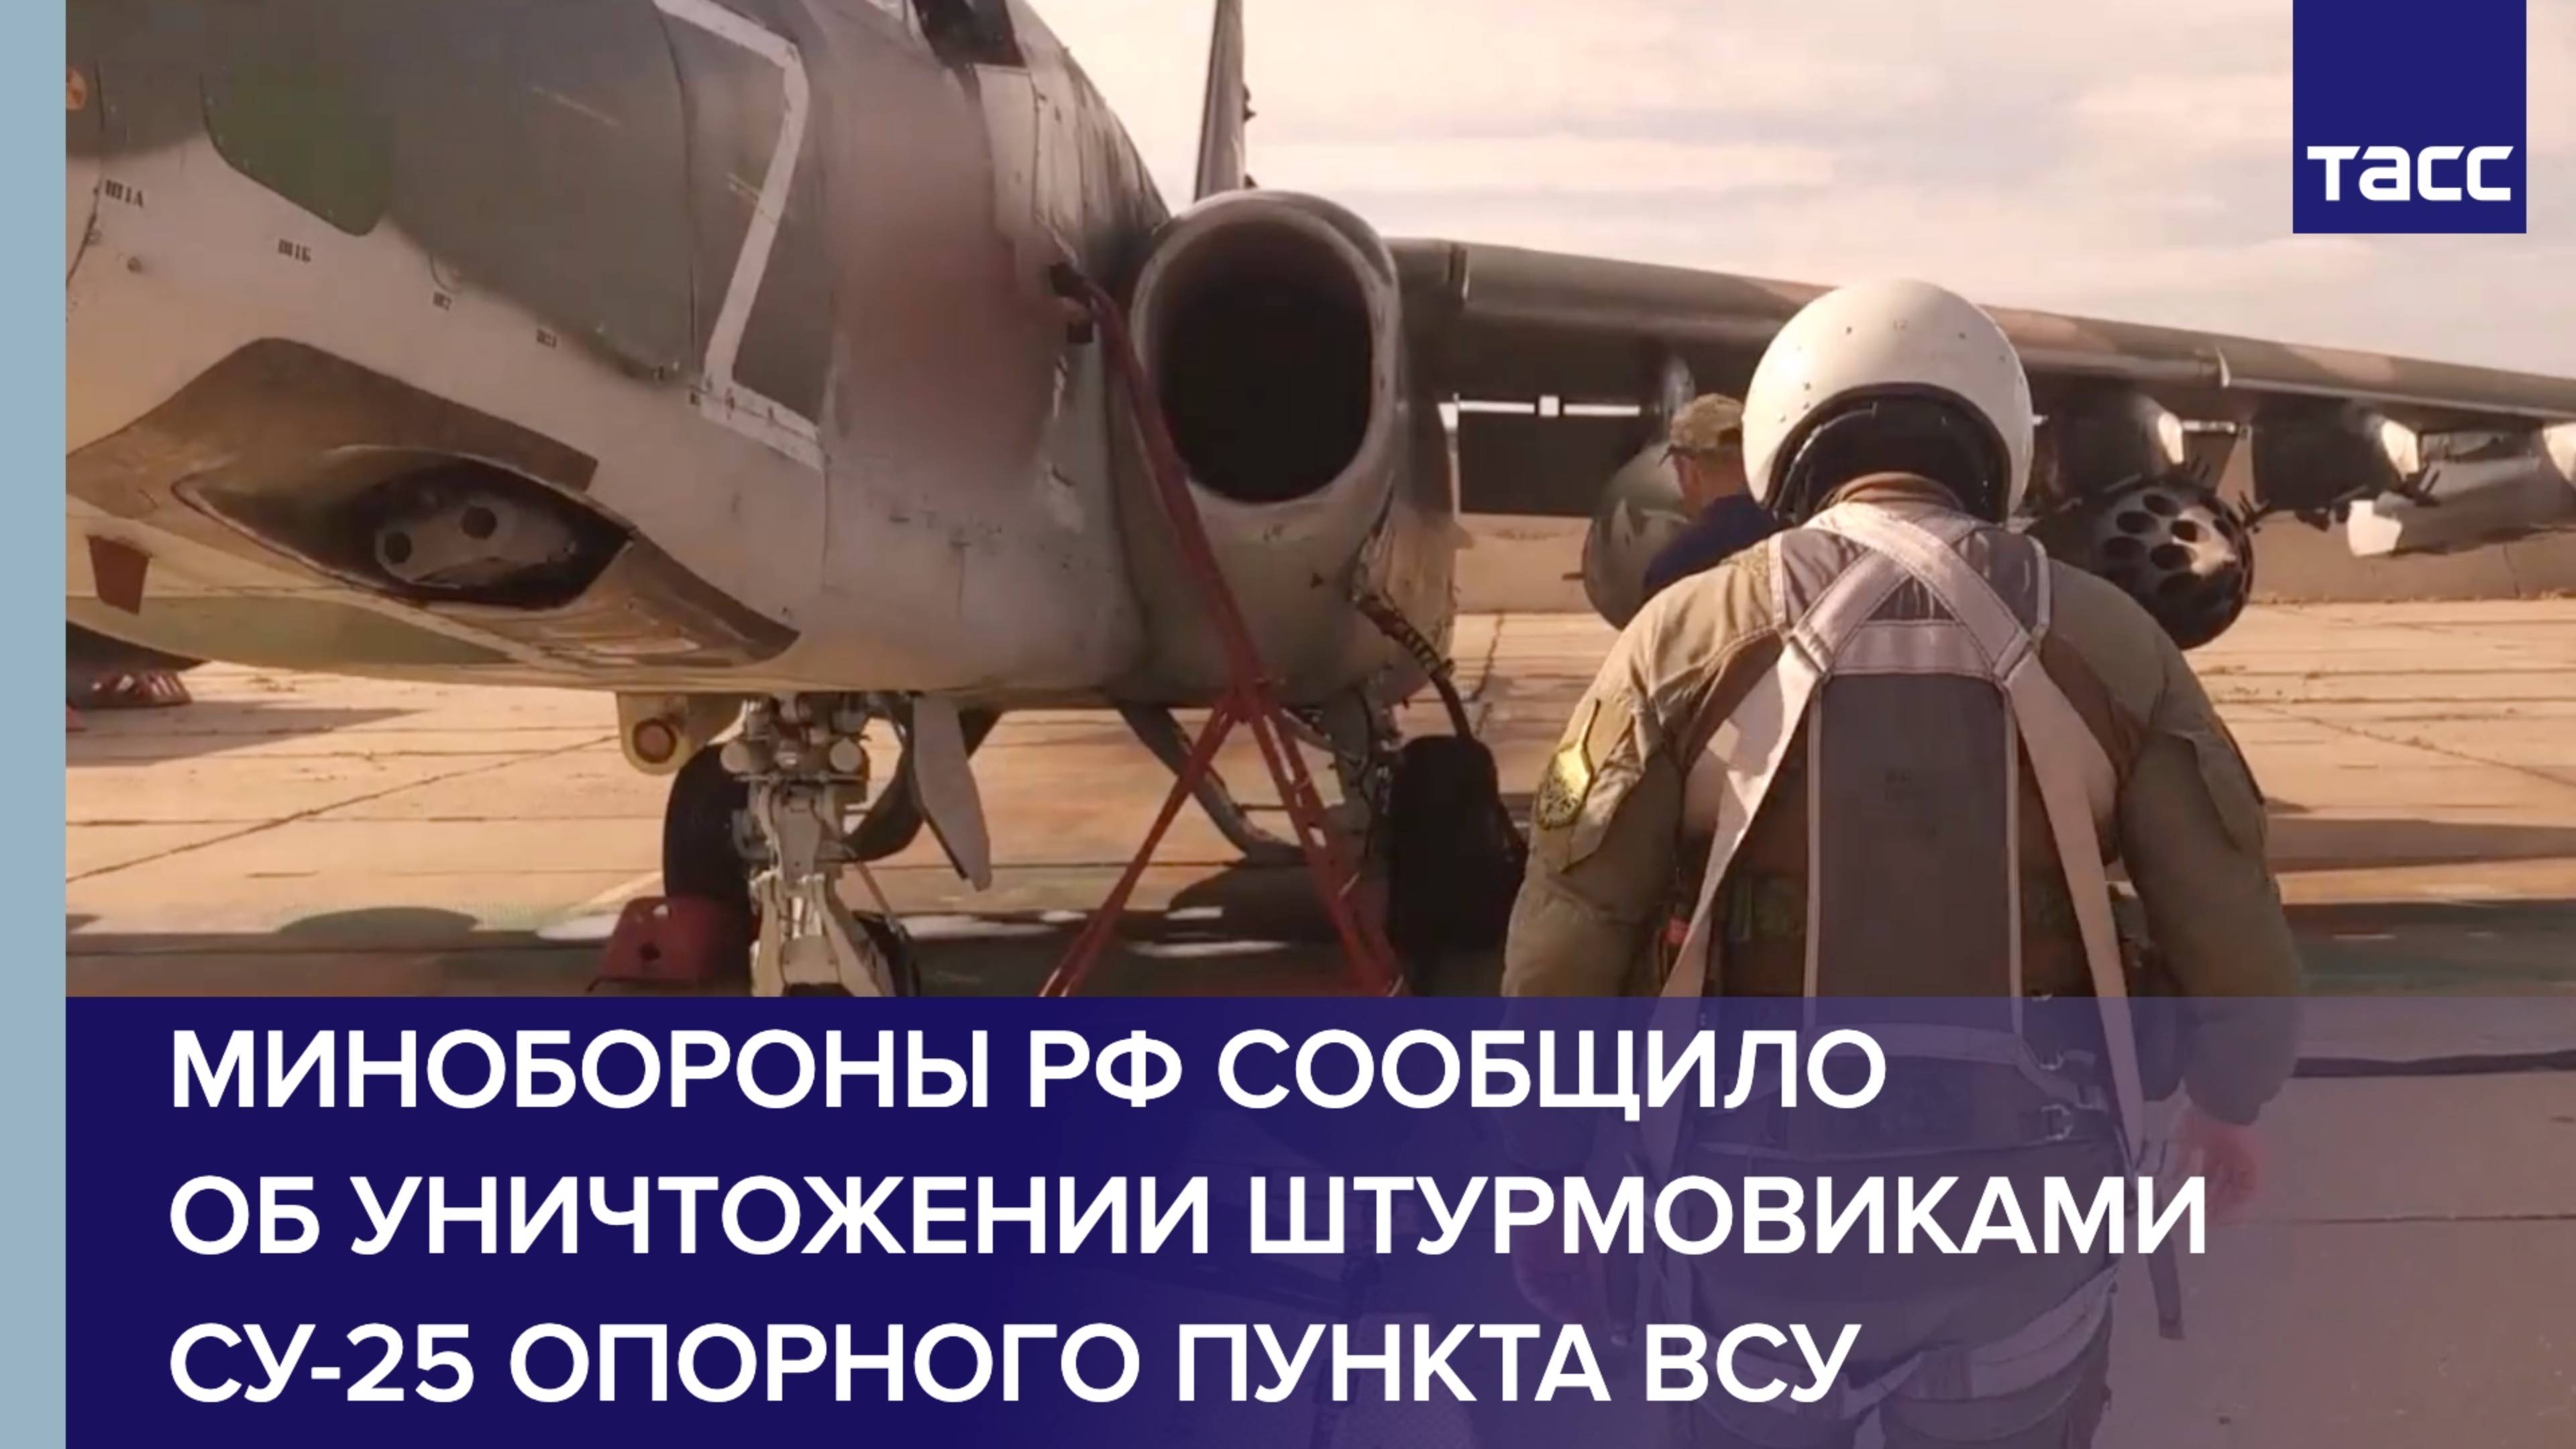 Минобороны РФ сообщило об уничтожении штурмовиками Су-25 опорного пункта ВСУ